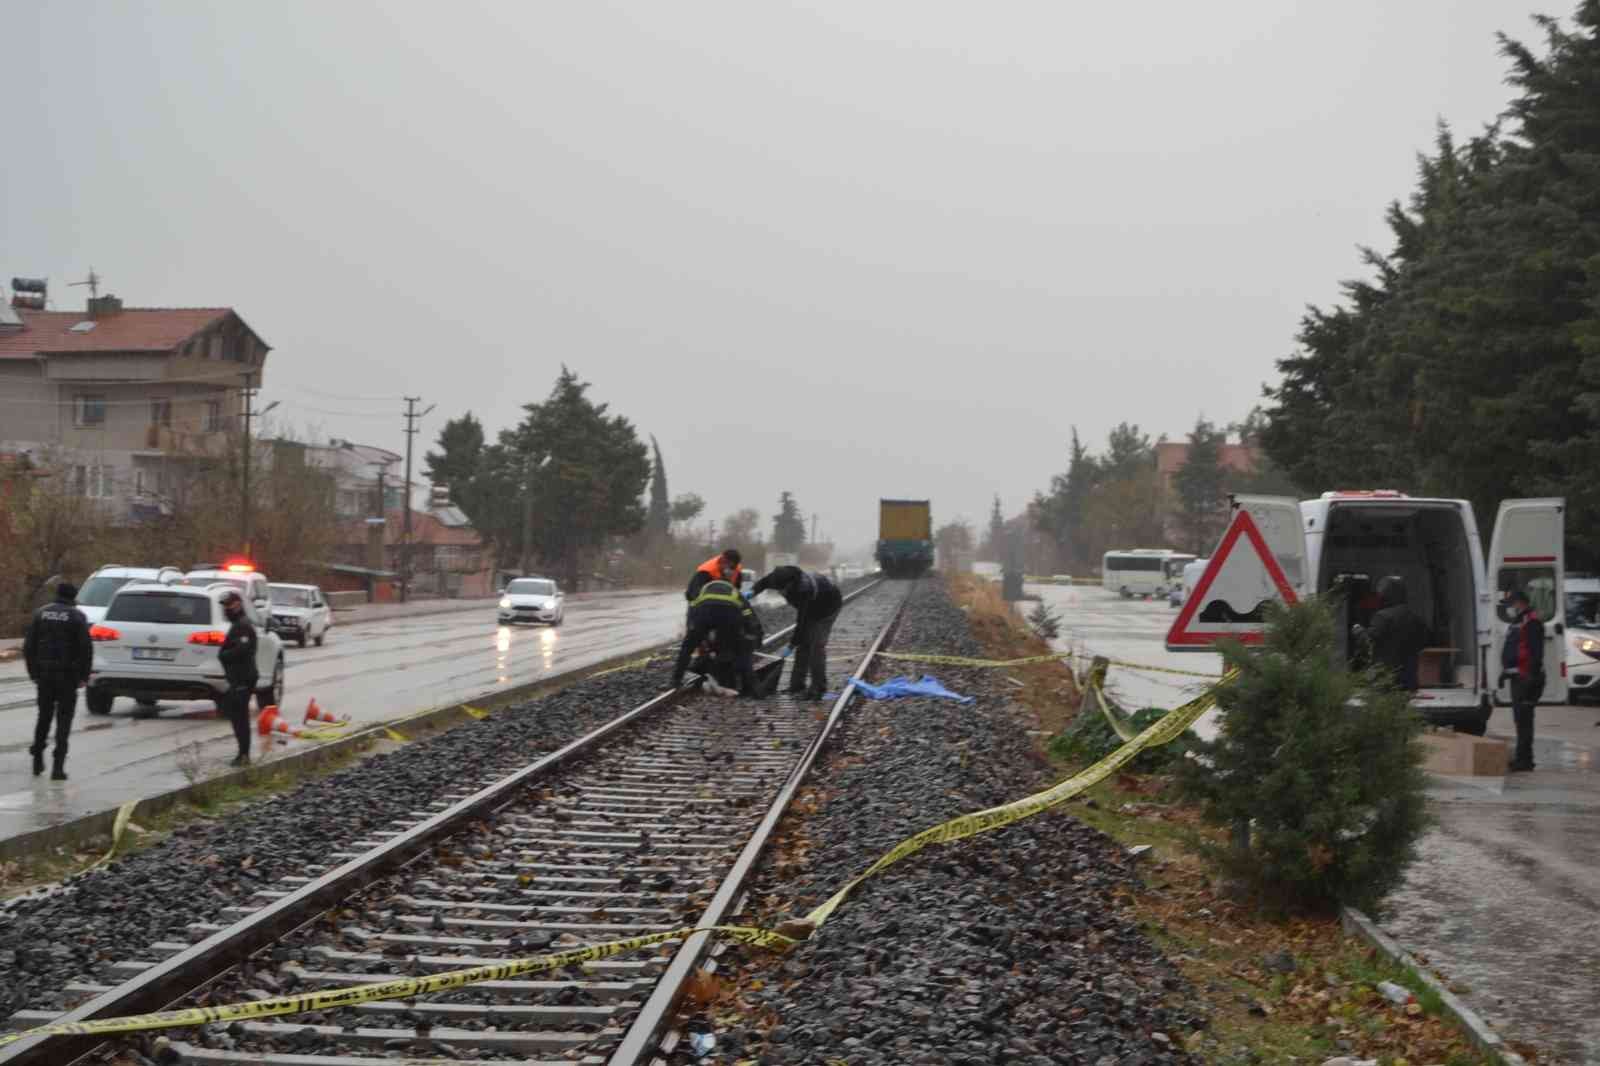 Demiryolundan karşıya geçmek isteyen kadına yük treni çarptı: 1 ölü #burdur